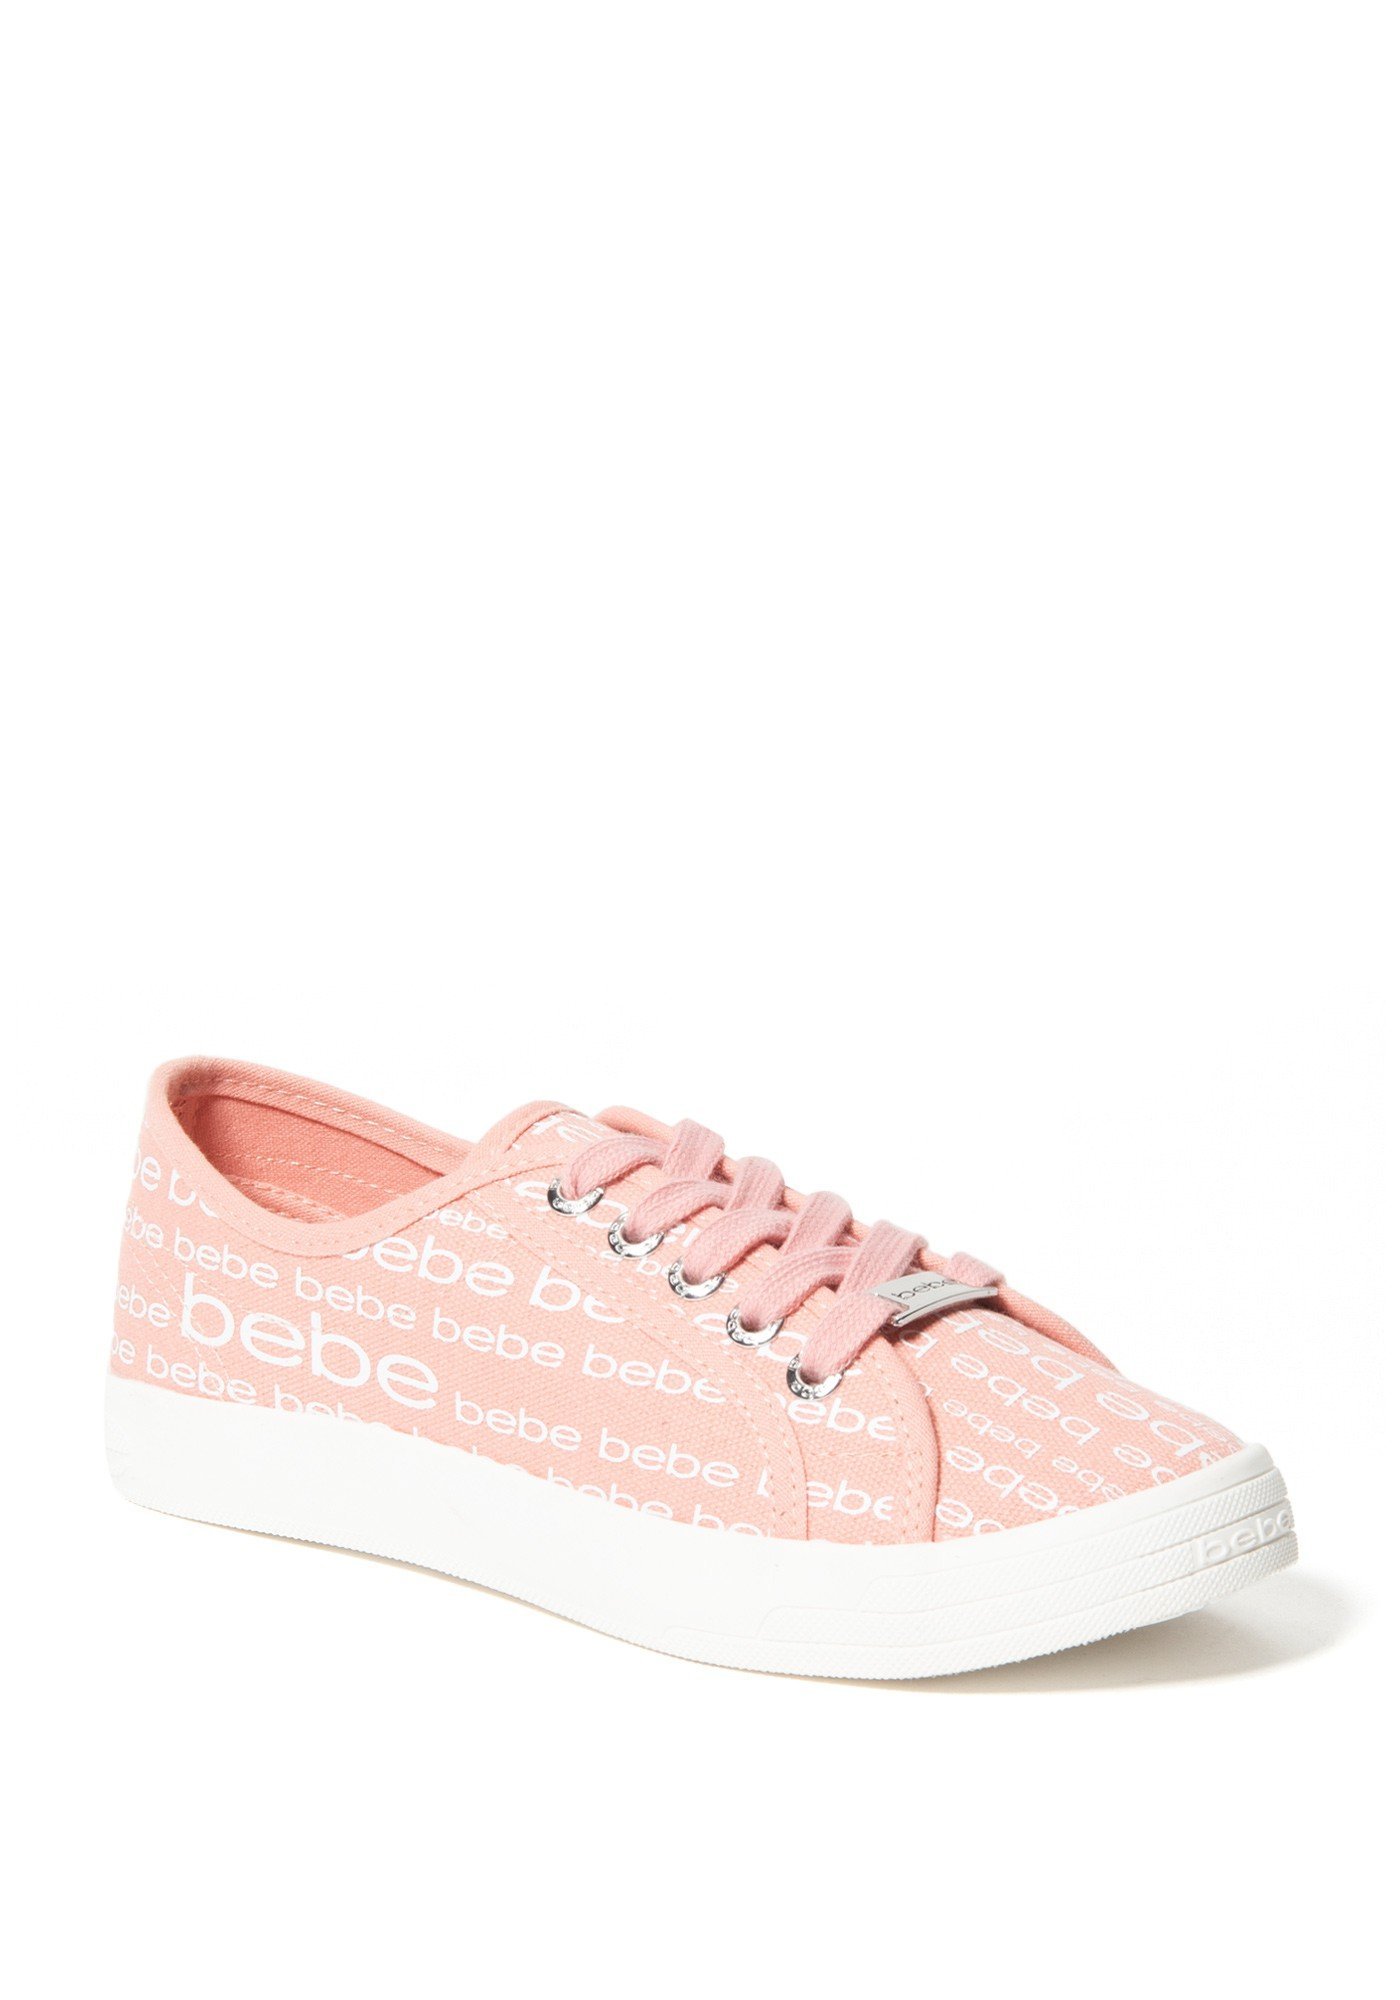 Bebe Women's Daylin Logo Sneakers, Size 6.5 in Pink Synthetic